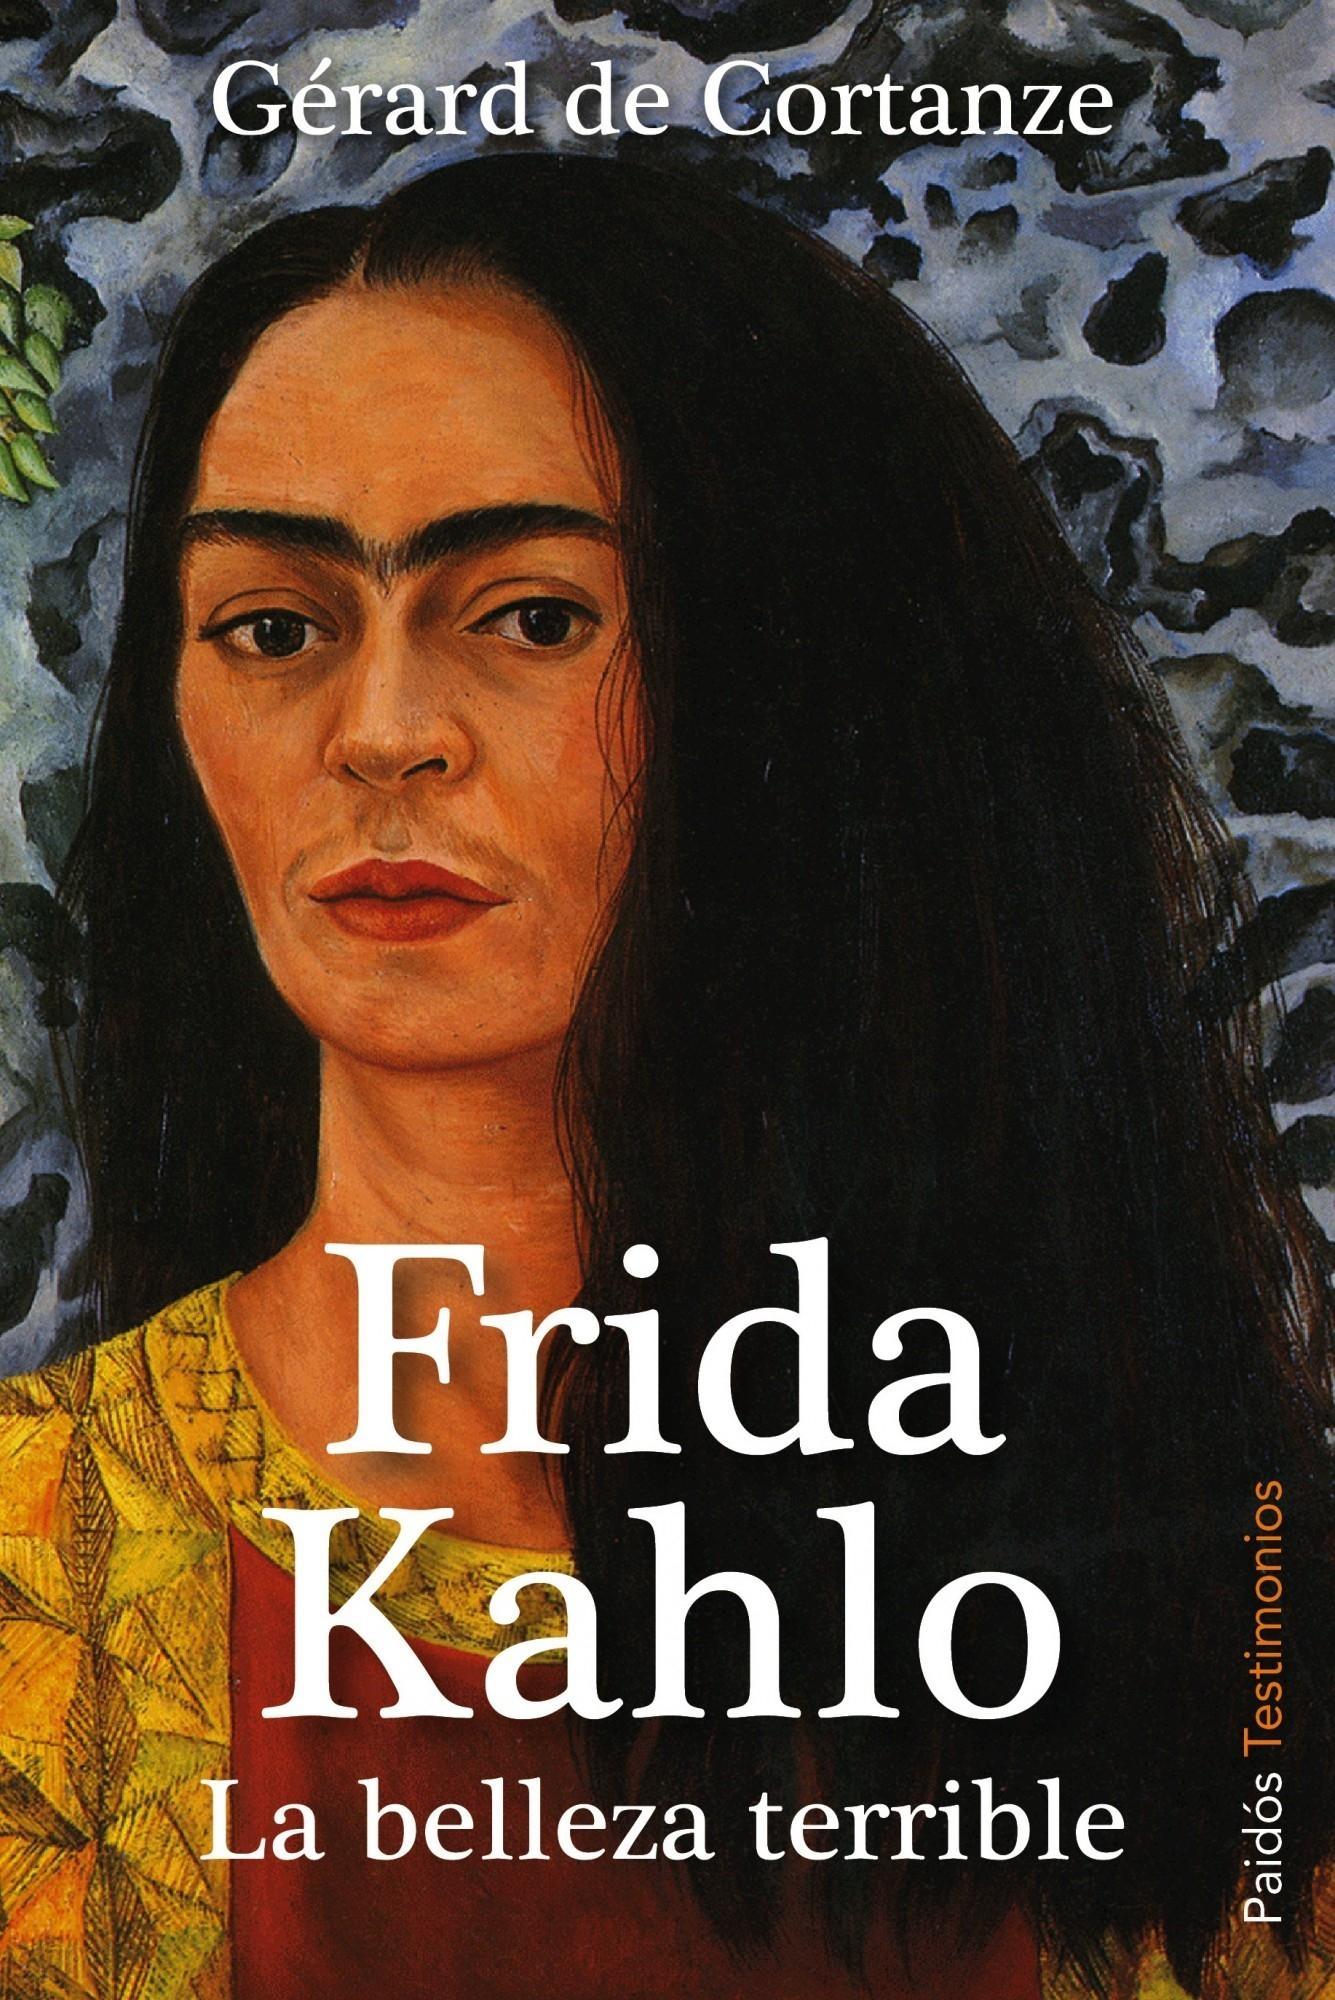 Frida Kahlo "La belleza terrible"